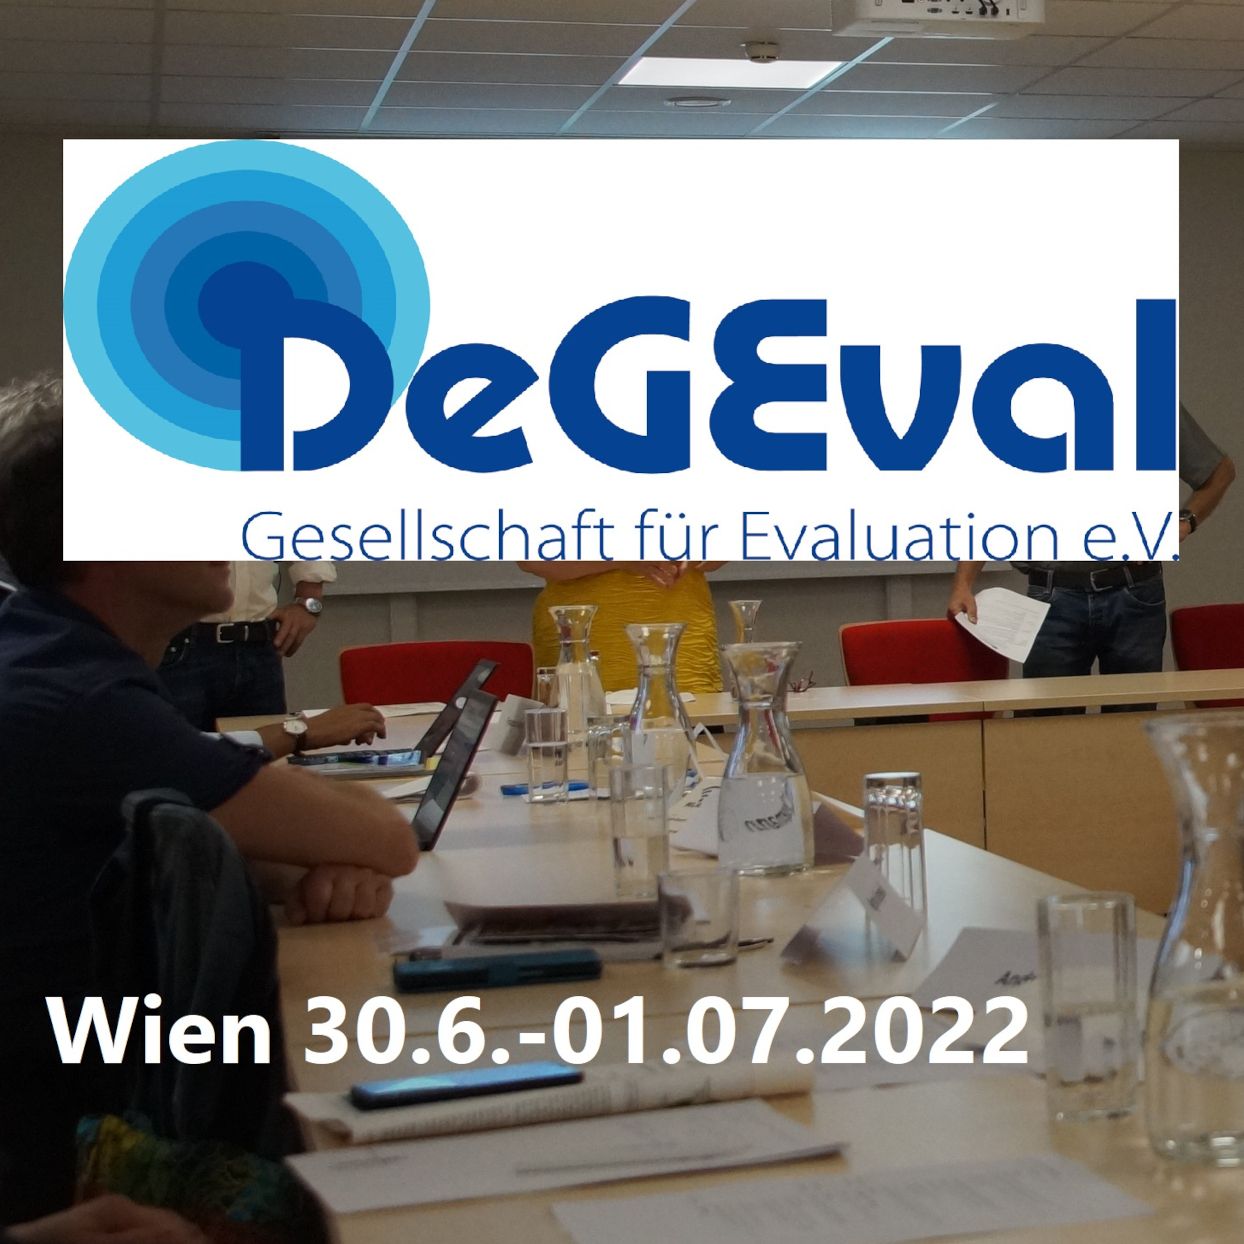 Veranstaltungsraum, drüber das Logo von DeGEval und das Veranstaltungsdatum.